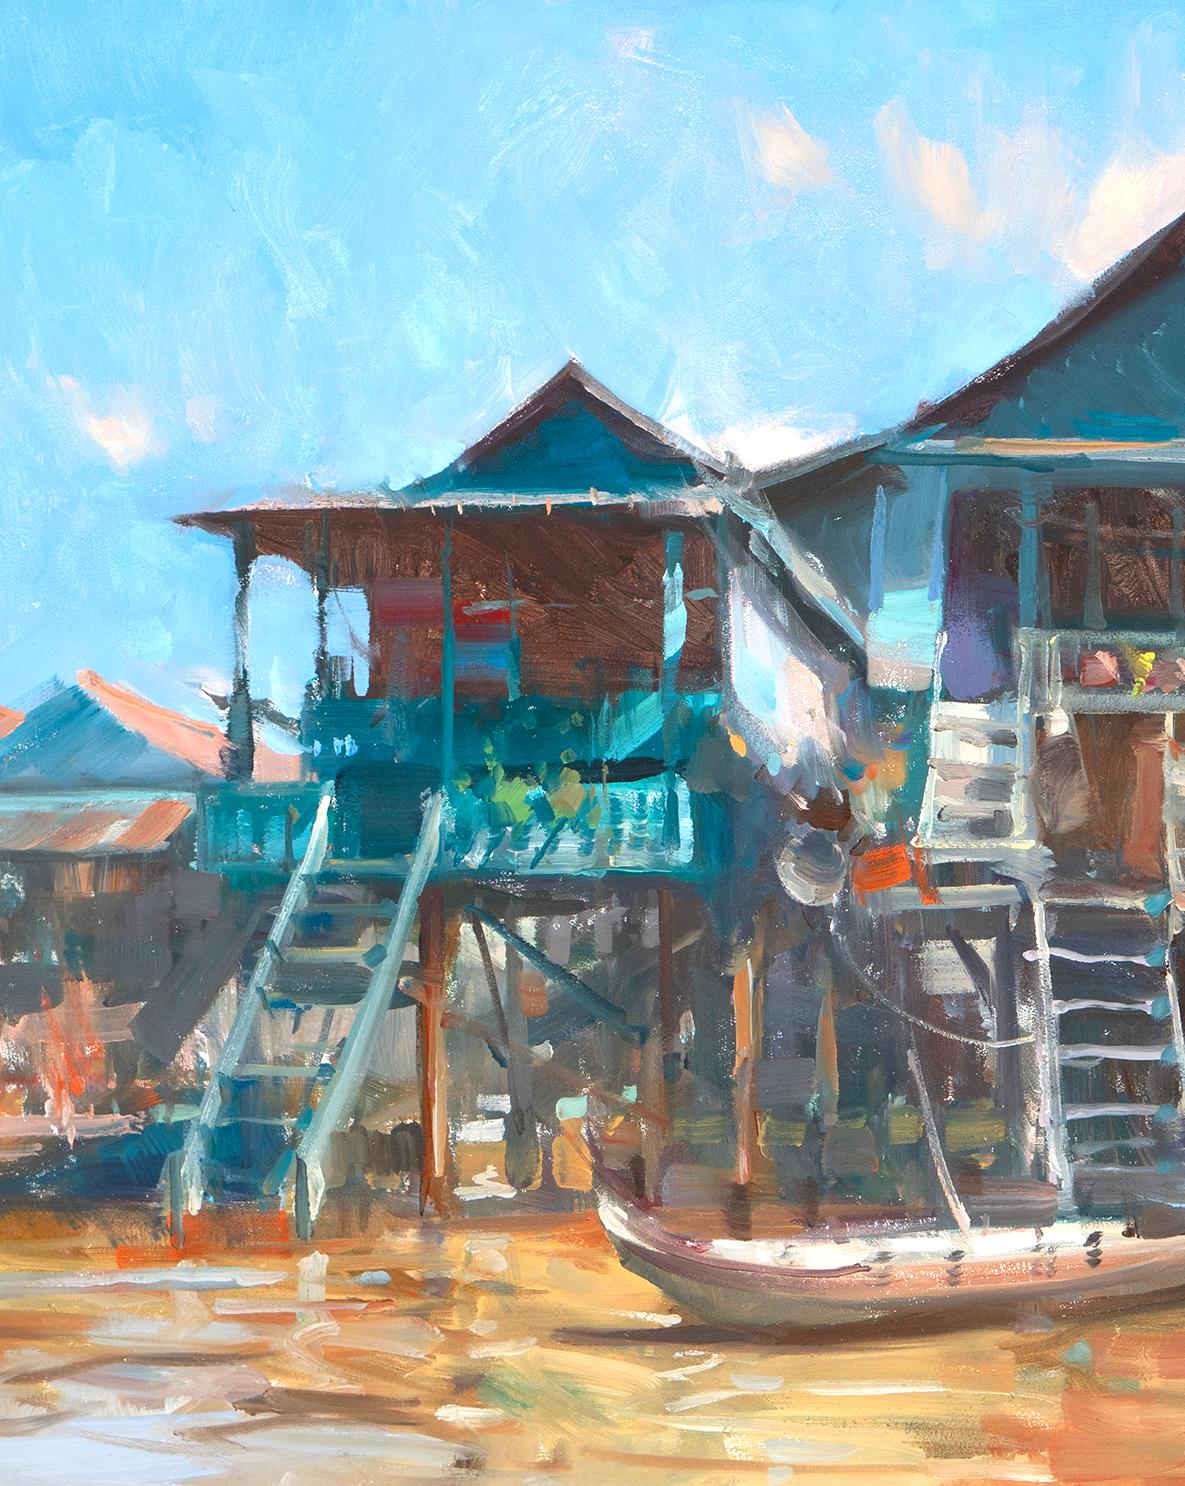 « Fleating City », scène impressionniste moderne du Cambodge - Painting de Bryan Mark Taylor